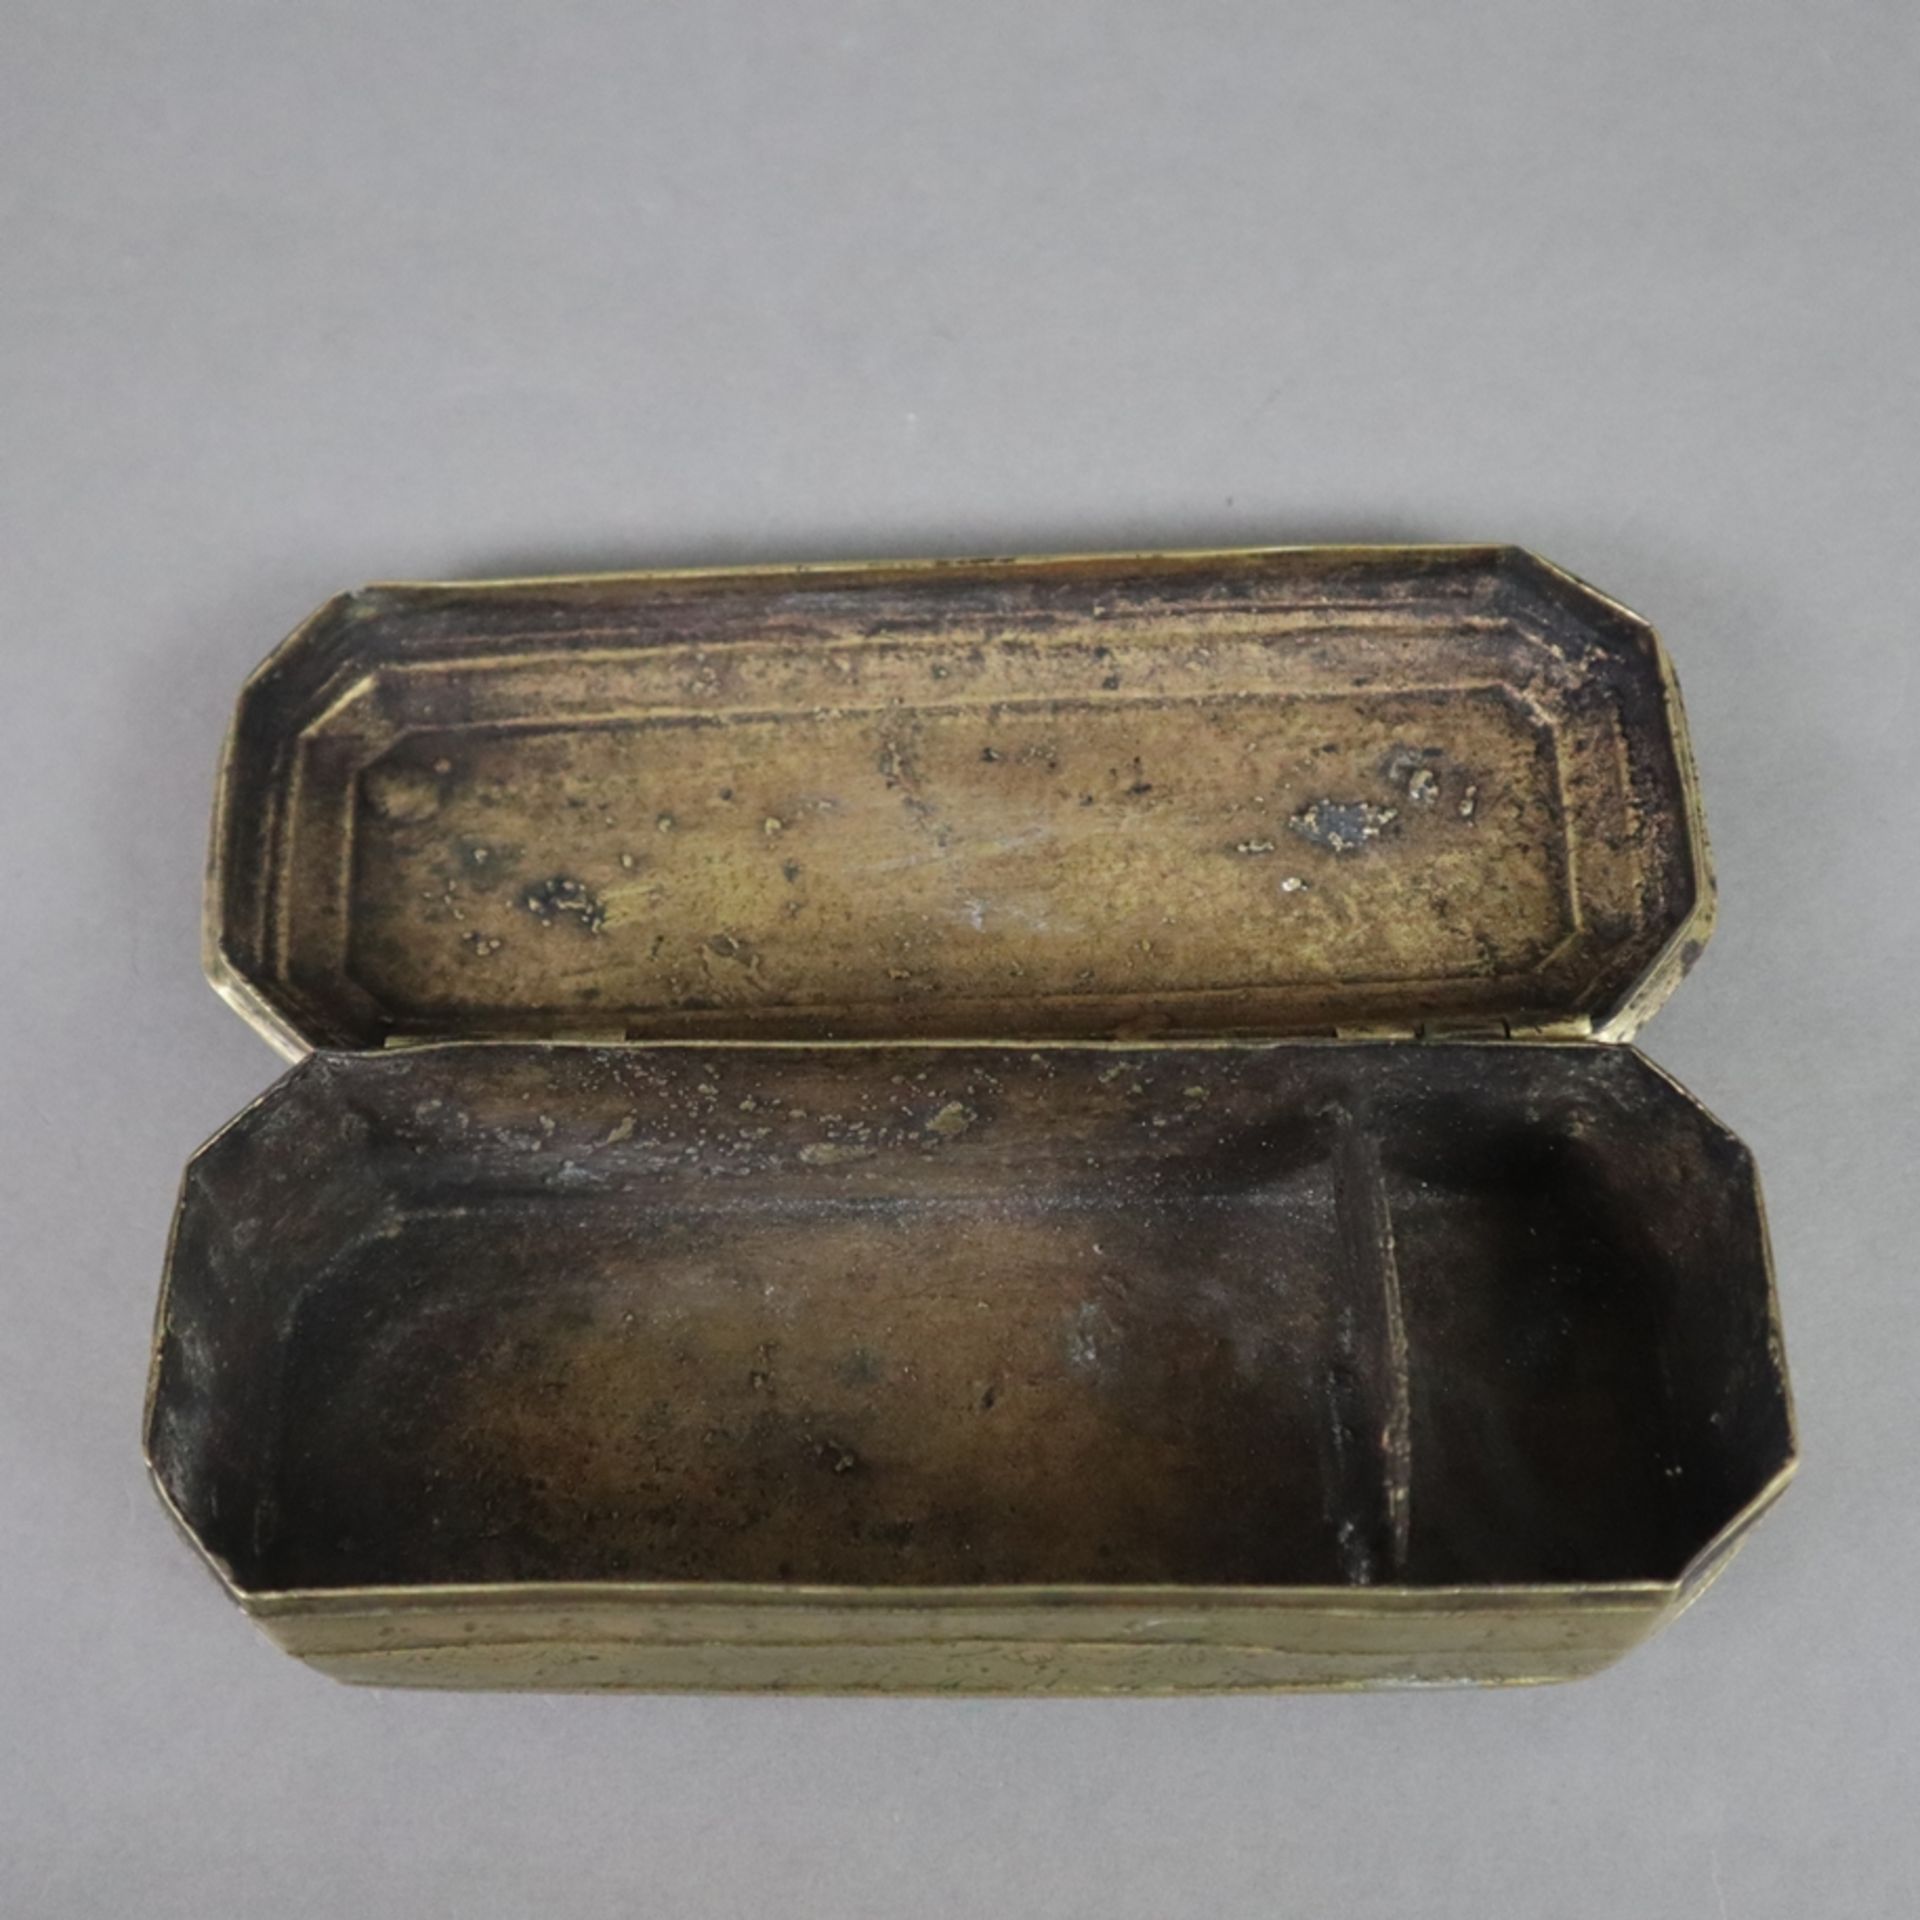 Betelnussdose - wohl Indien, 19. Jh., Messing, längliche achteckige Dose mit gewölbtem Scharnierdec - Bild 4 aus 7